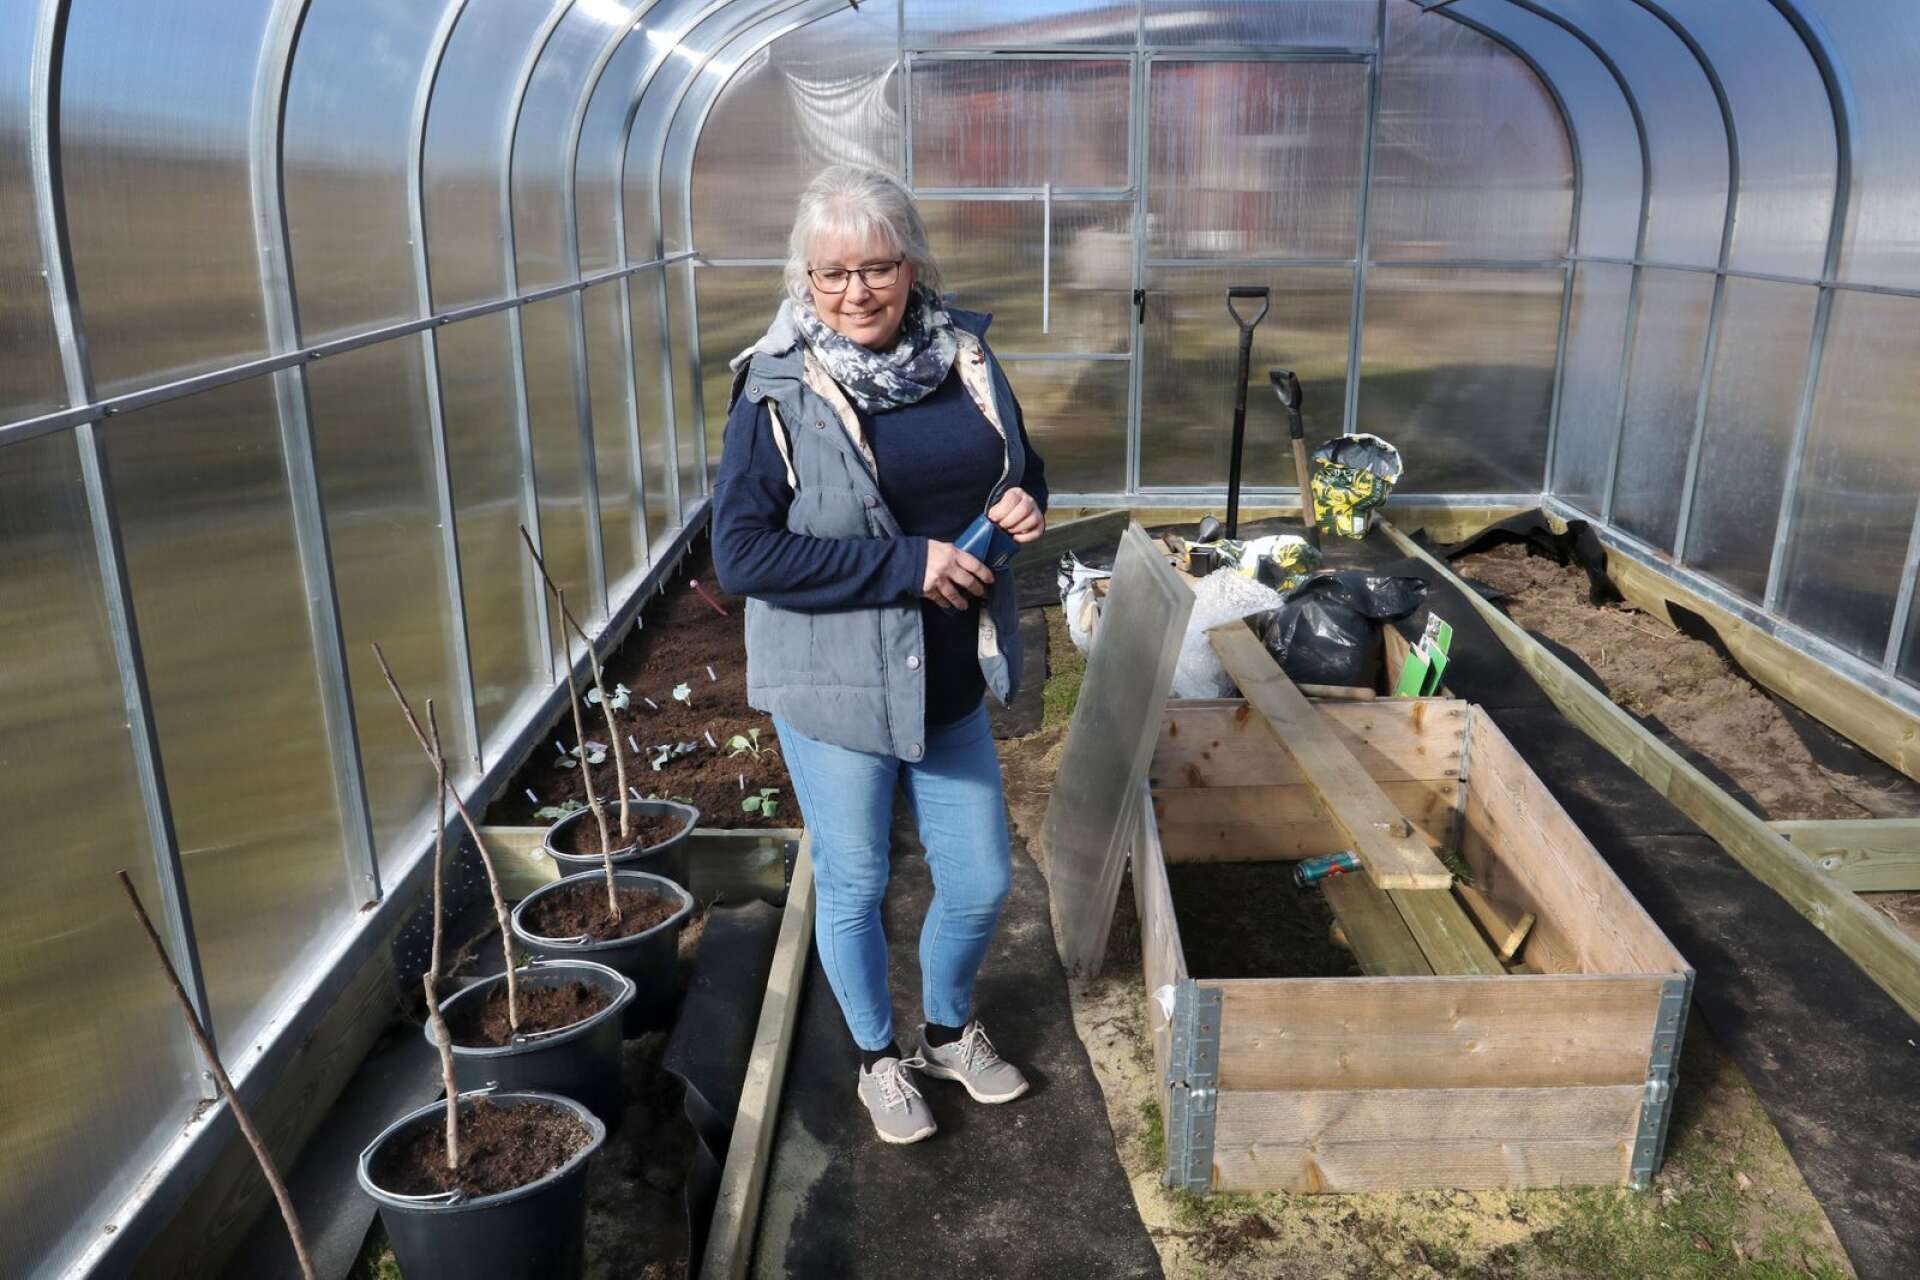 Susan och maken Mats har i år ett nytt växthus att inreda. 